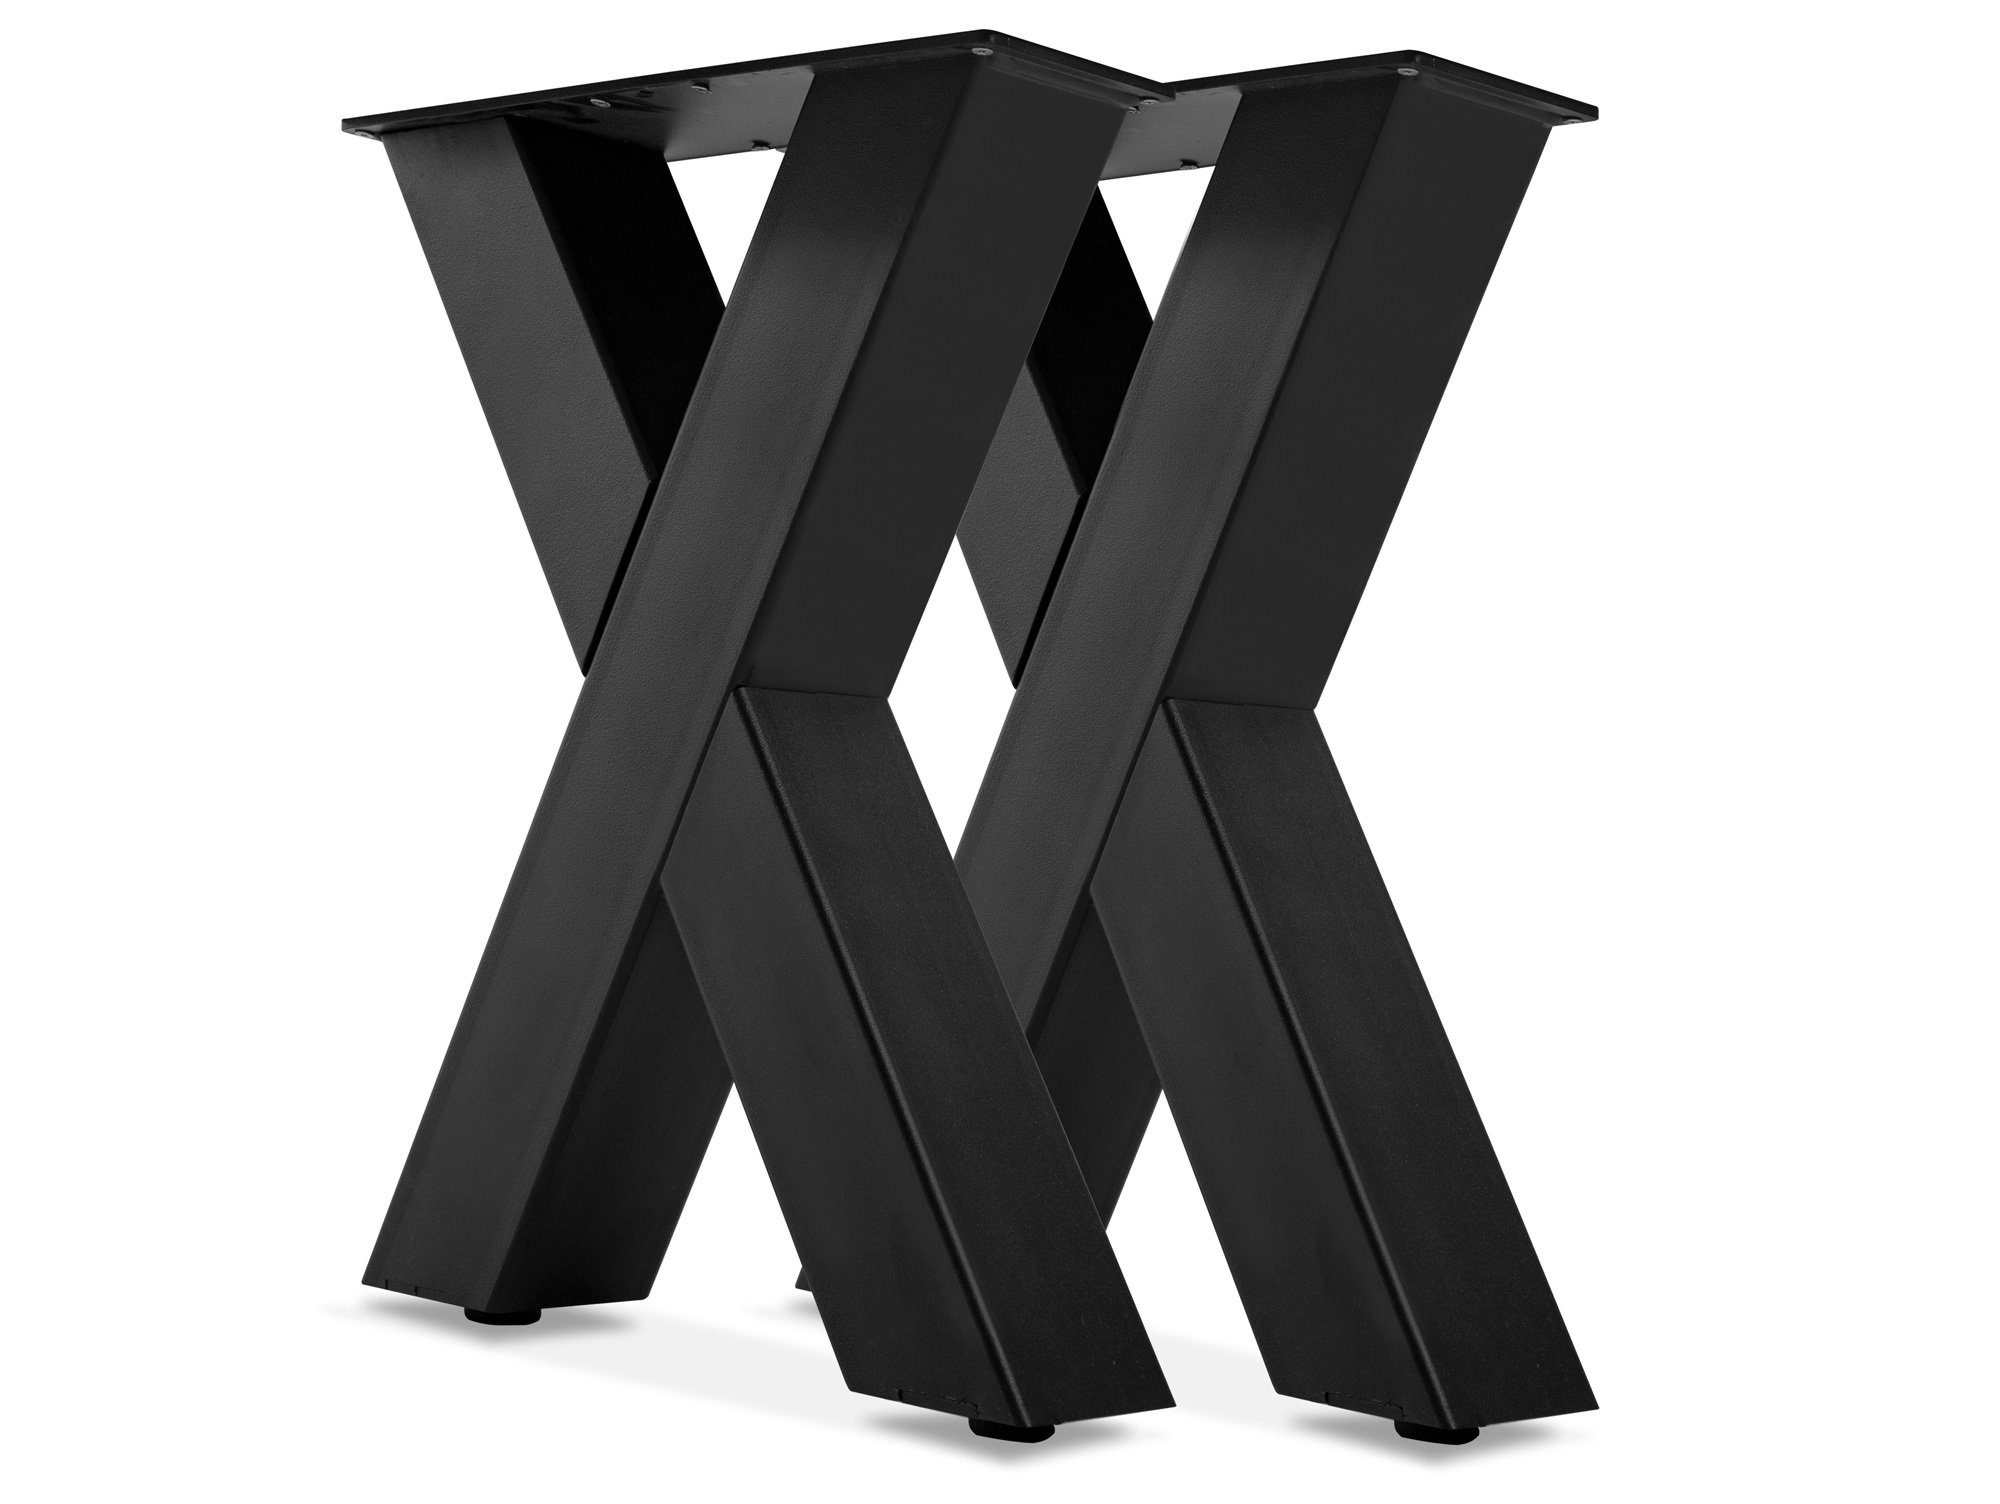 Moebel-Eins Sitzbank, 1 PAAR X-Beine für Bank, 46x40 cm, Material Stahl,  schwarz